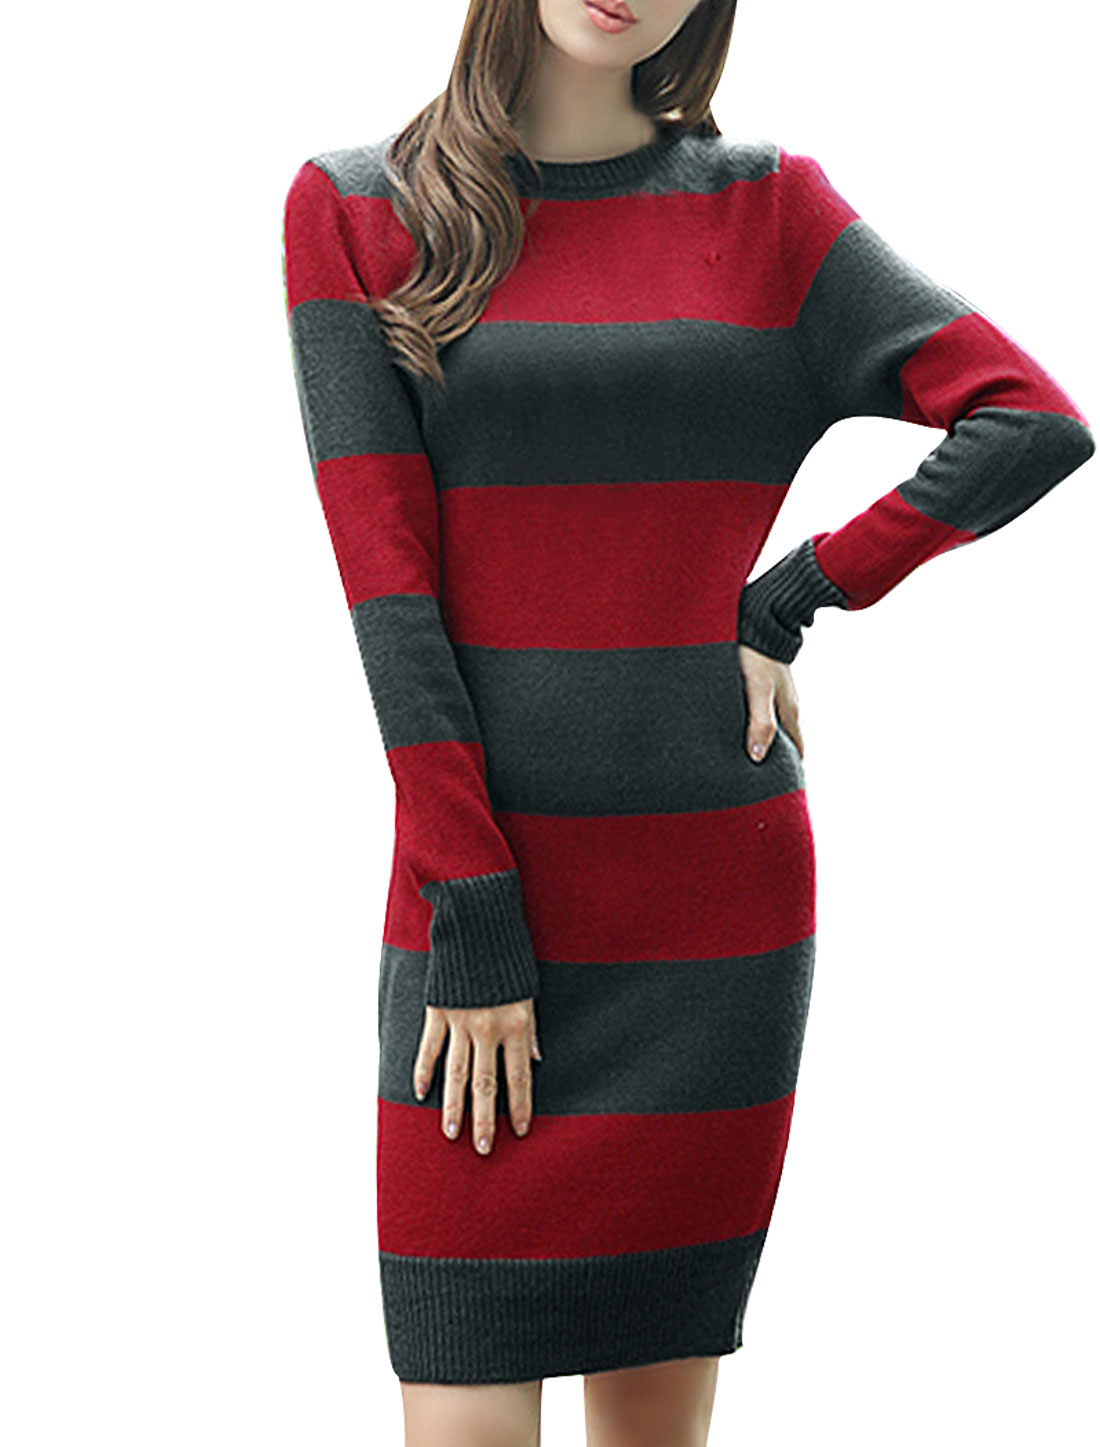 Unique Bargains Unique Bragains Juniors Striped Sweater Dress (Size S / 3)